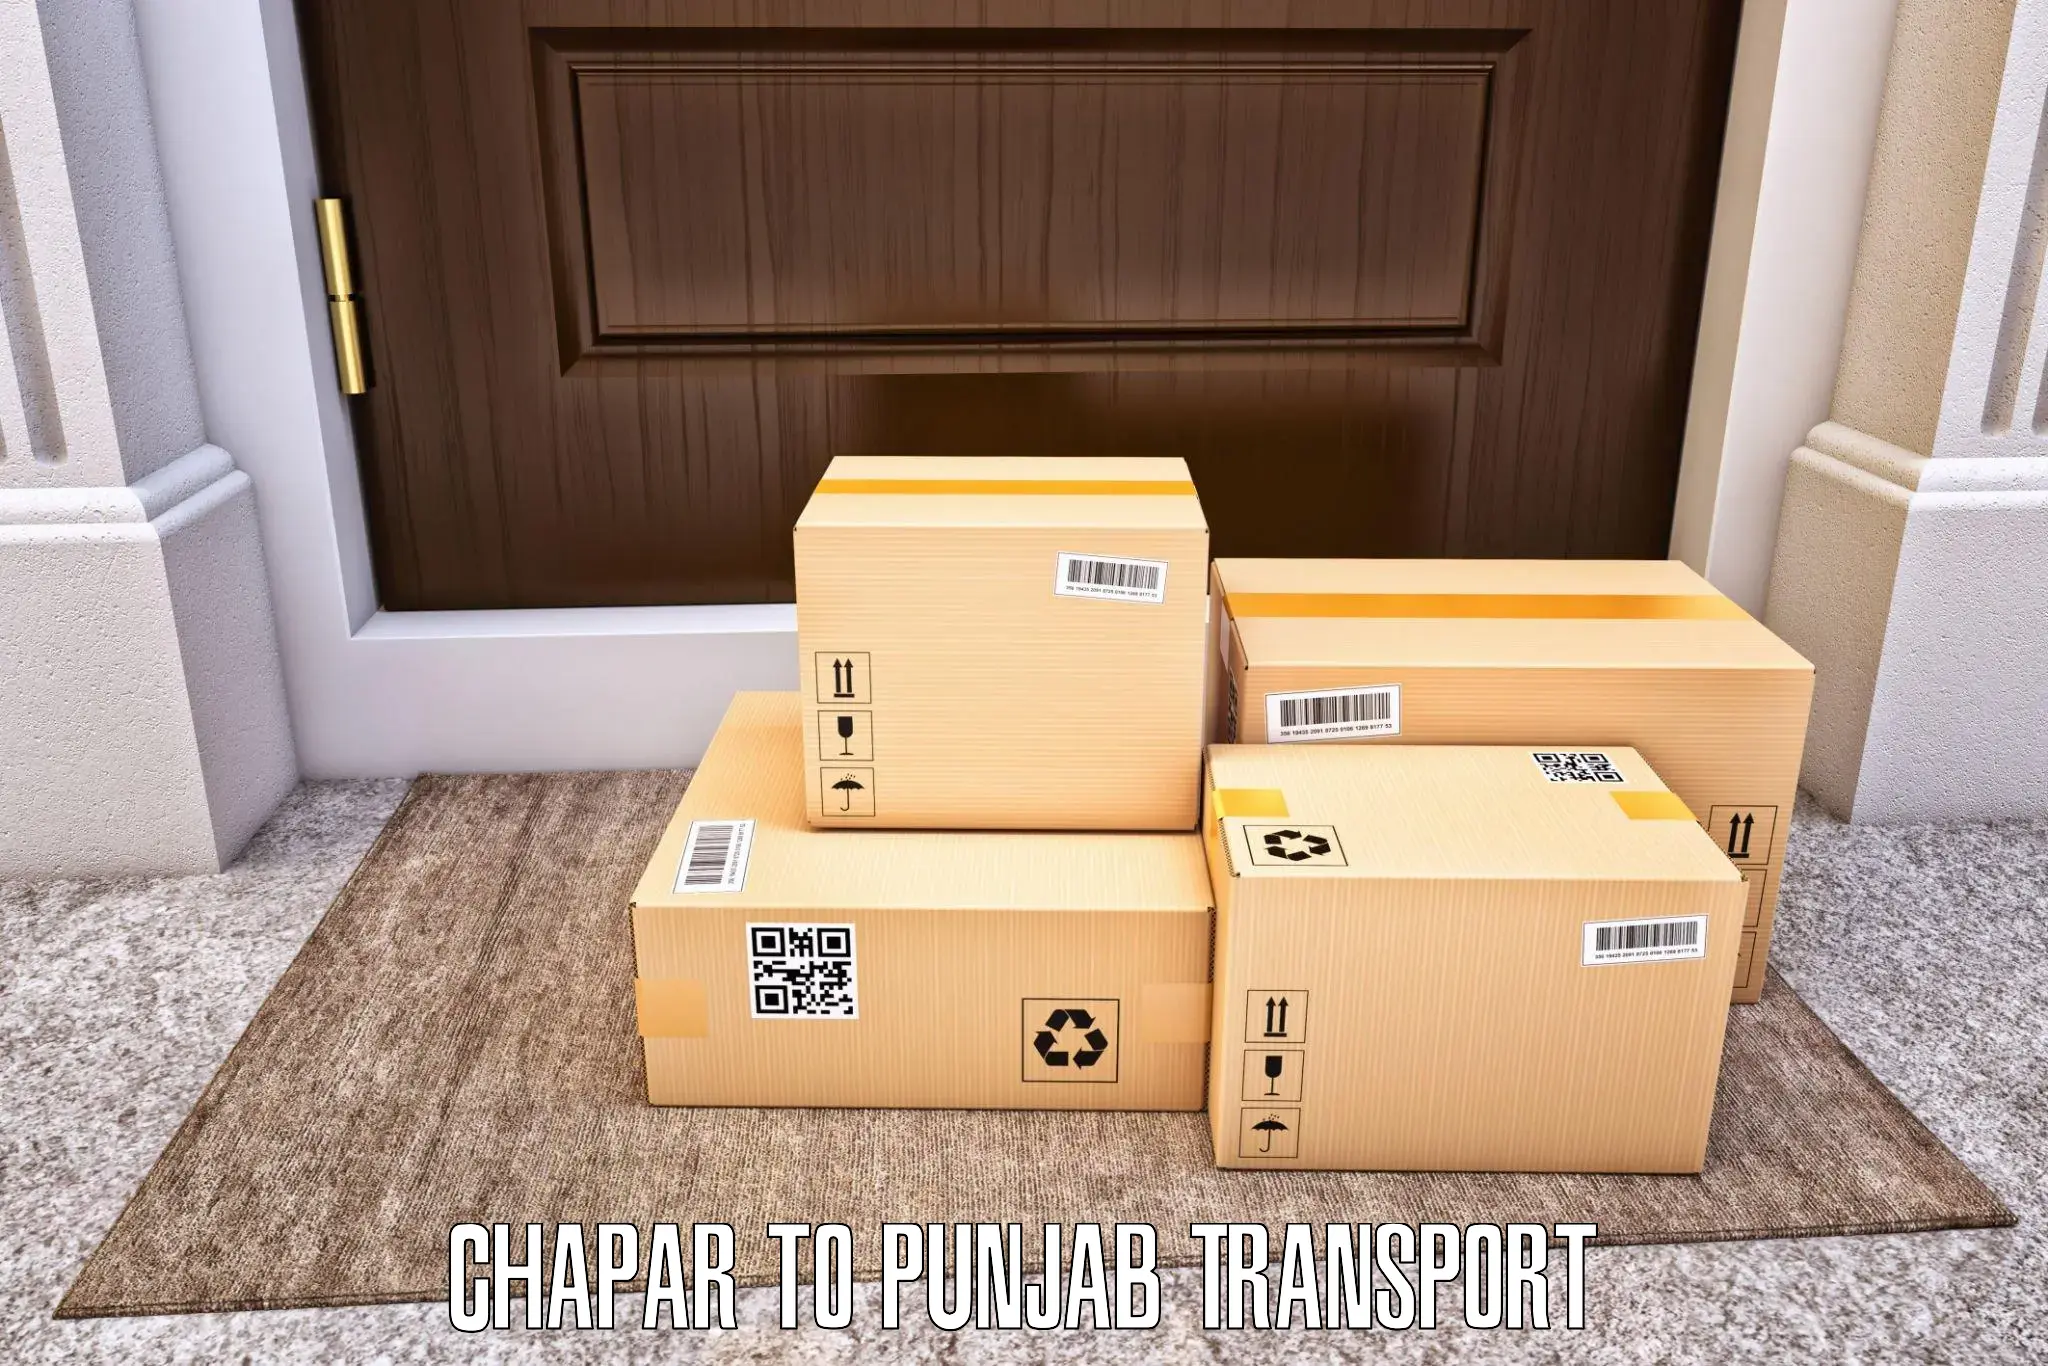 Cargo transport services Chapar to Patran